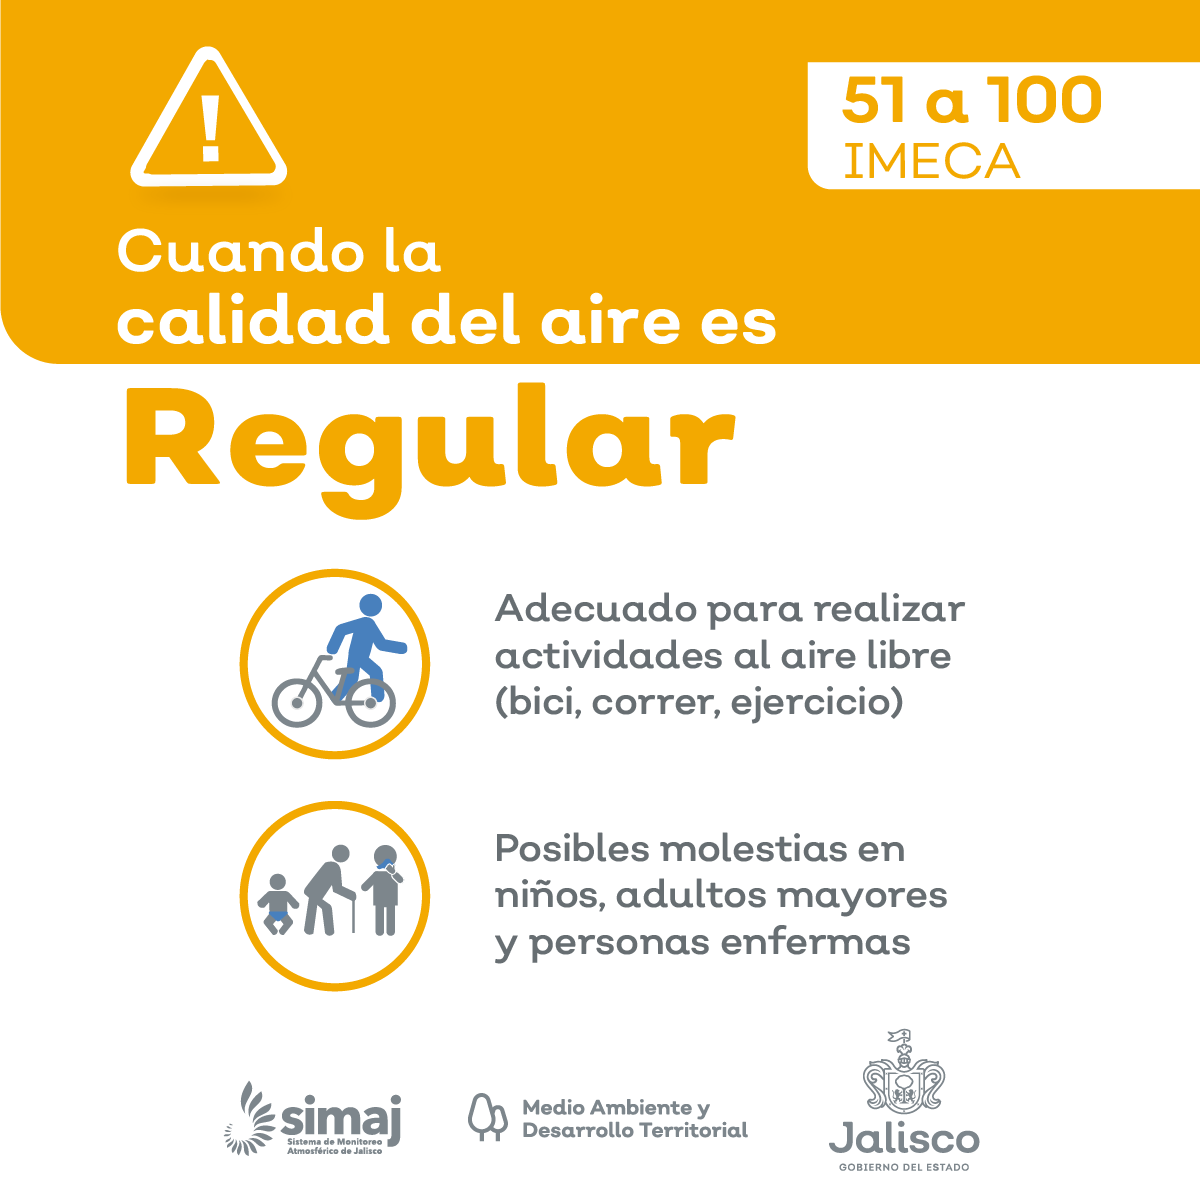 mié. 08:00 a.m. En #AMG la #CalidadDelAire Promedio es : REGULAR, nivel máximo registrado 102 puntos IMECA en Las Pintas Consulta Índice de calidad del aire en AMG : aire.jalisco.gob.mx